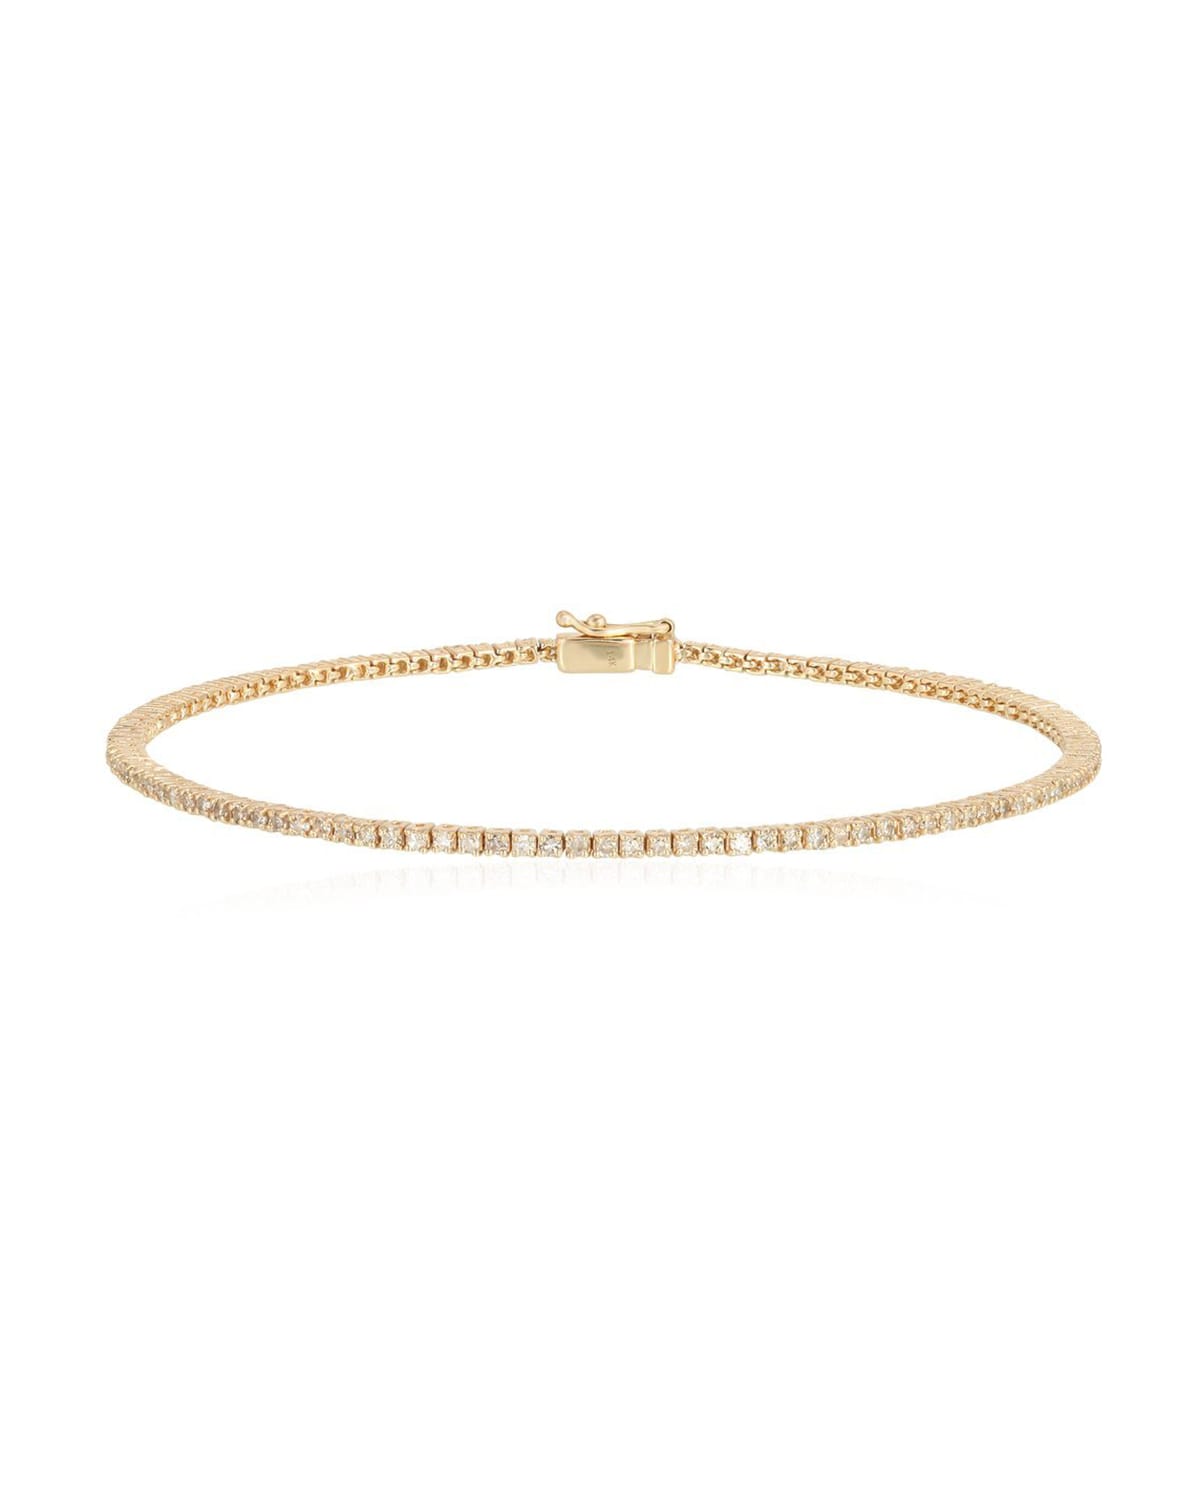 Kastel Jewelry 14k Diamond Tennis Bracelet